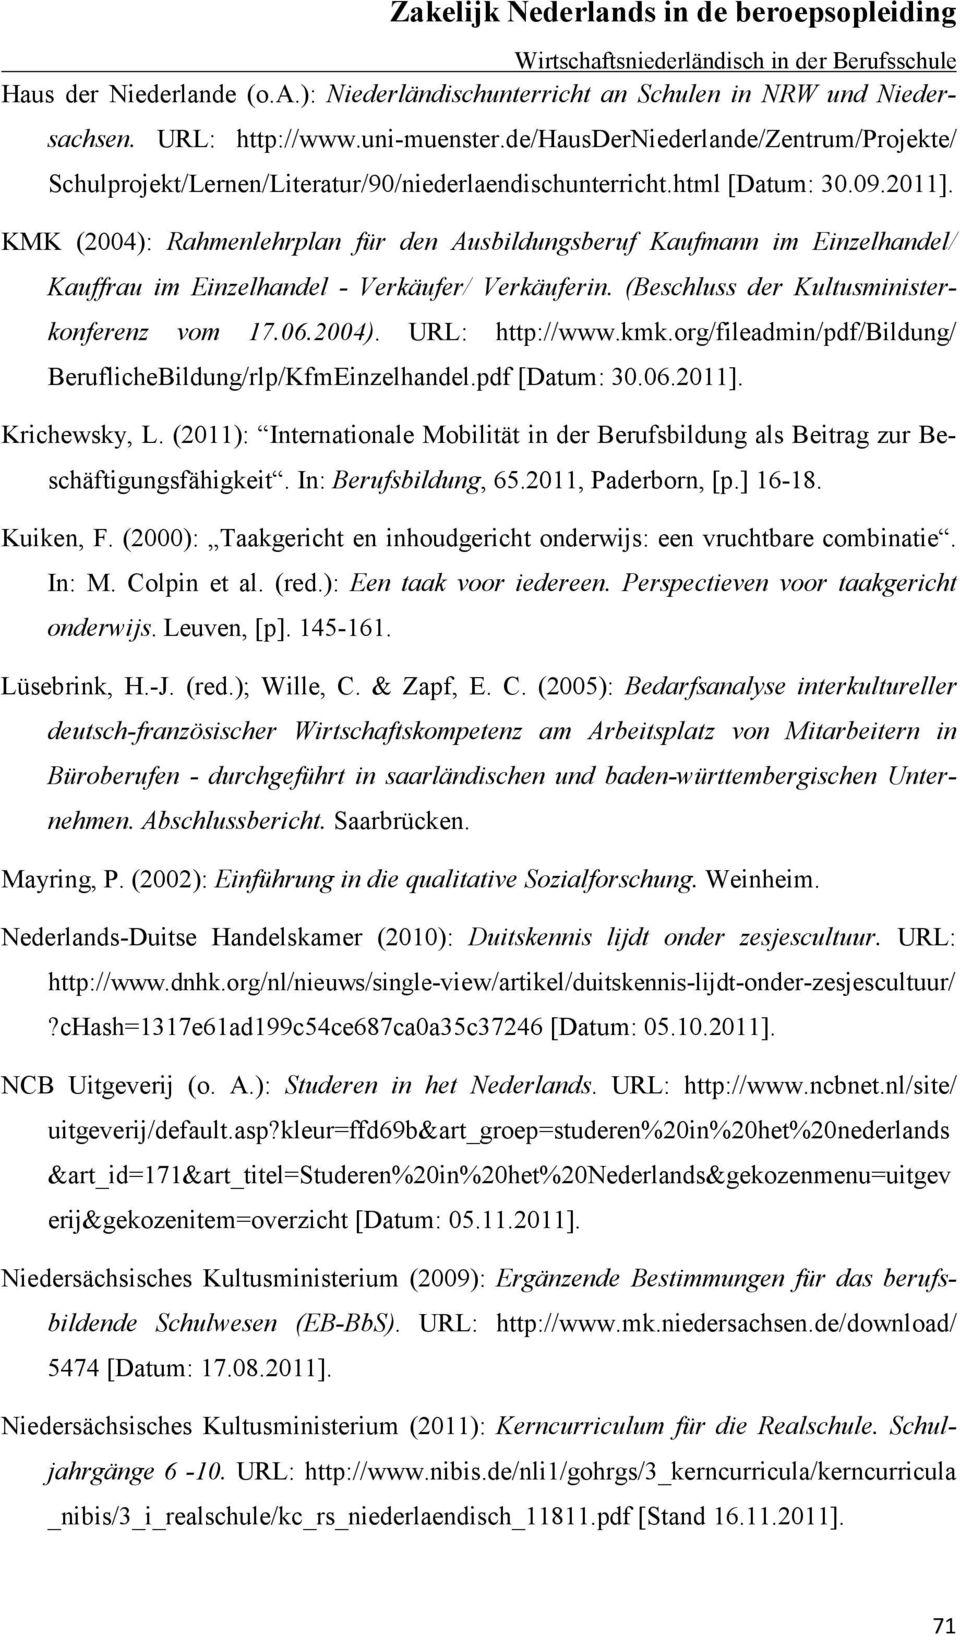 KMK (2004): Rahmenlehrplan für den Ausbildungsberuf Kaufmann im Einzelhandel/ Kauffrau im Einzelhandel - Verkäufer/ Verkäuferin. (Beschluss der Kultusministerkonferenz vom 17.06.2004). URL: http://www.